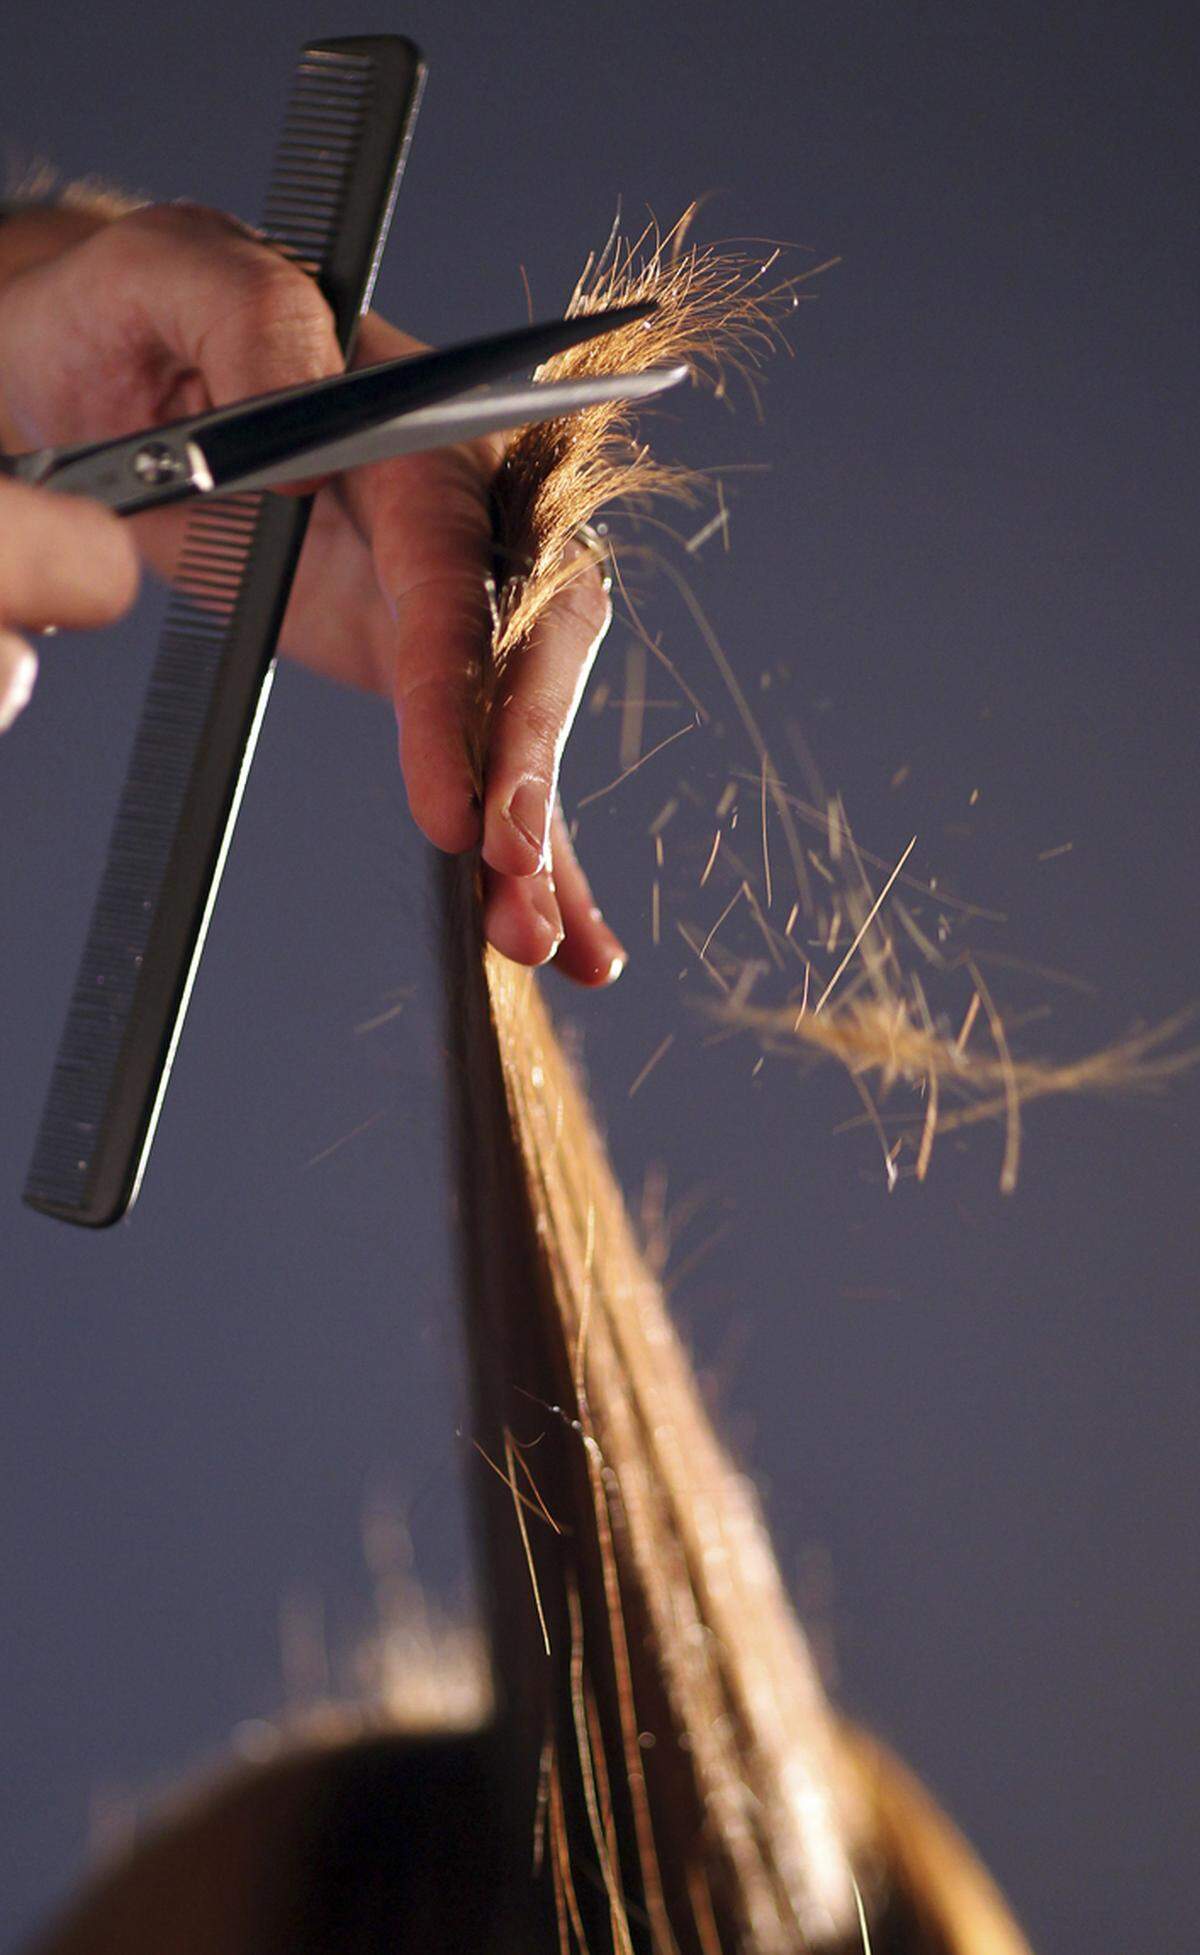 Dass Haare schneller nachwachsen, wenn man häufig die Spitzen schneidet, hört man besonders oft. Diese Weisheit ist ebenfalls ein Mythos, denn die Haarwurzeln werden durch die kontinuierlichen Schnitte nicht angeregt.